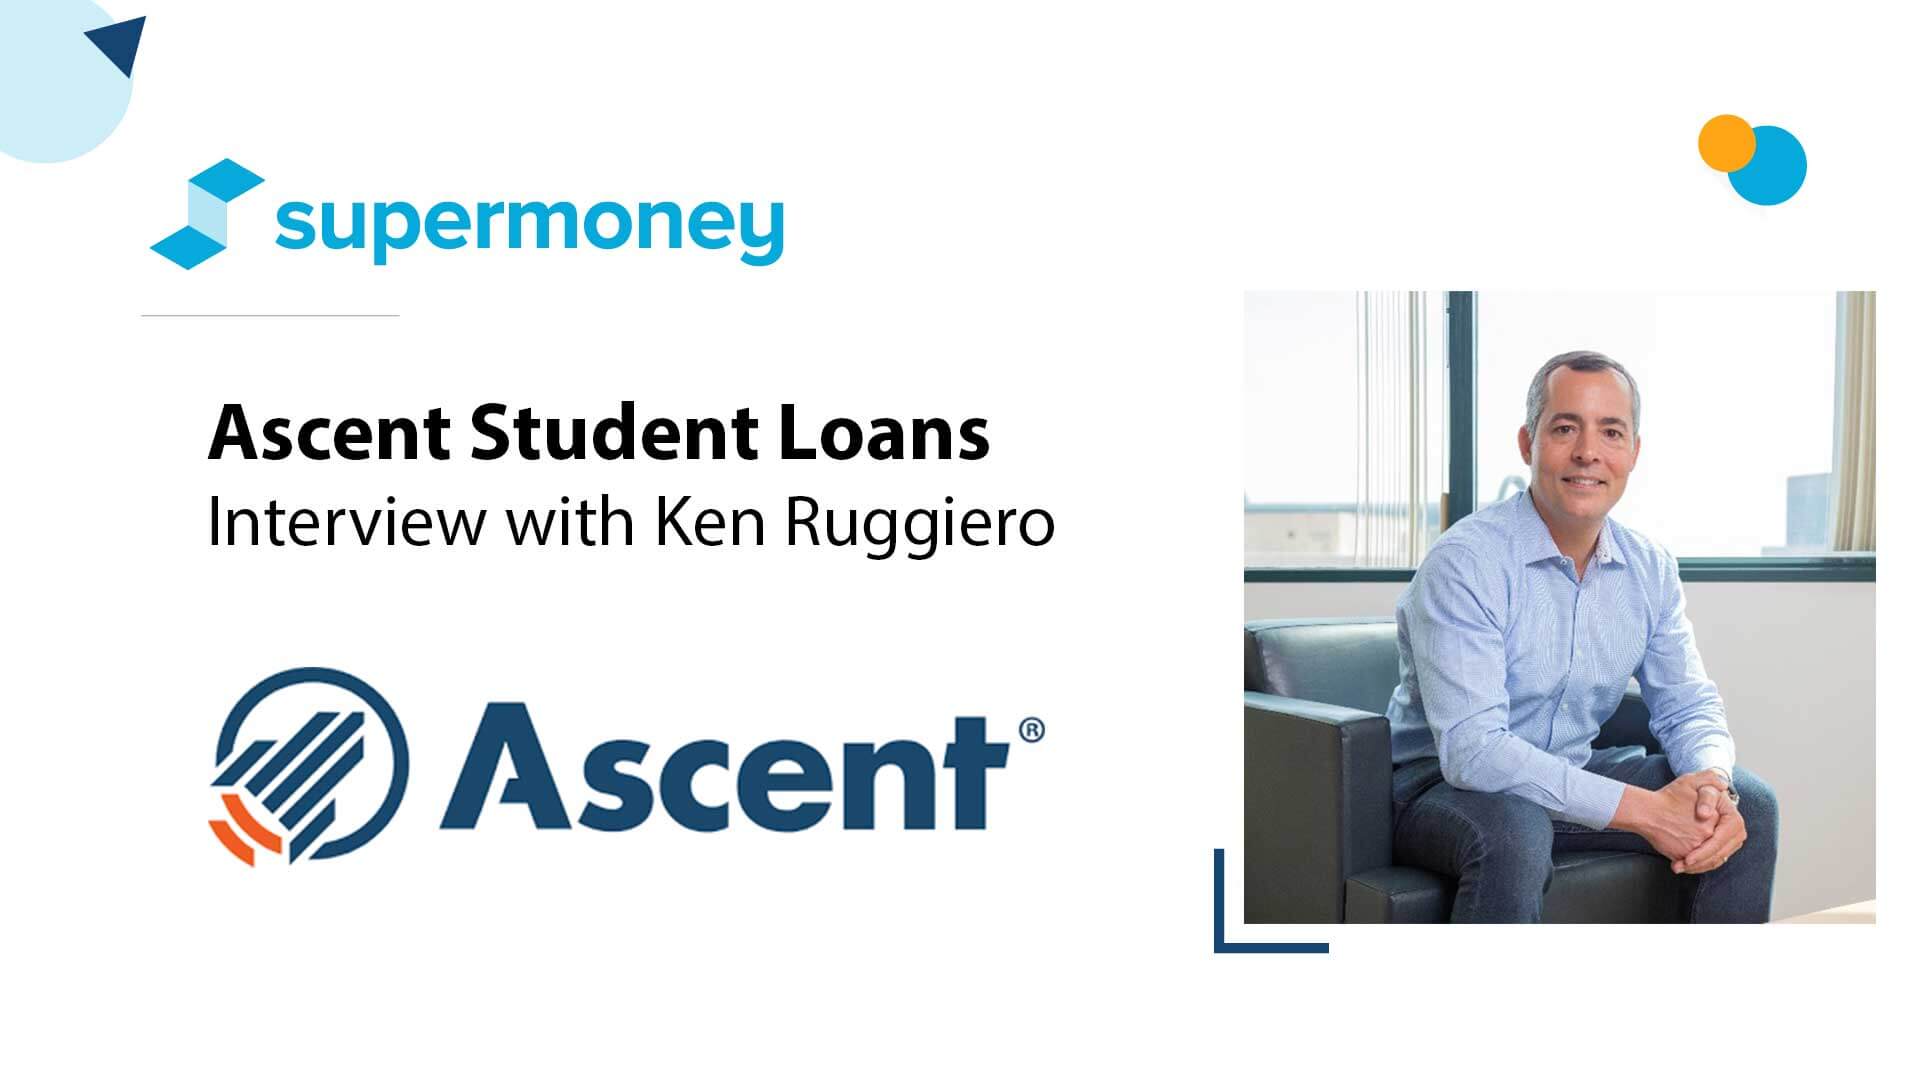 Asesoramiento sobre préstamos estudiantiles - Entrevista con Ken Ruggiero